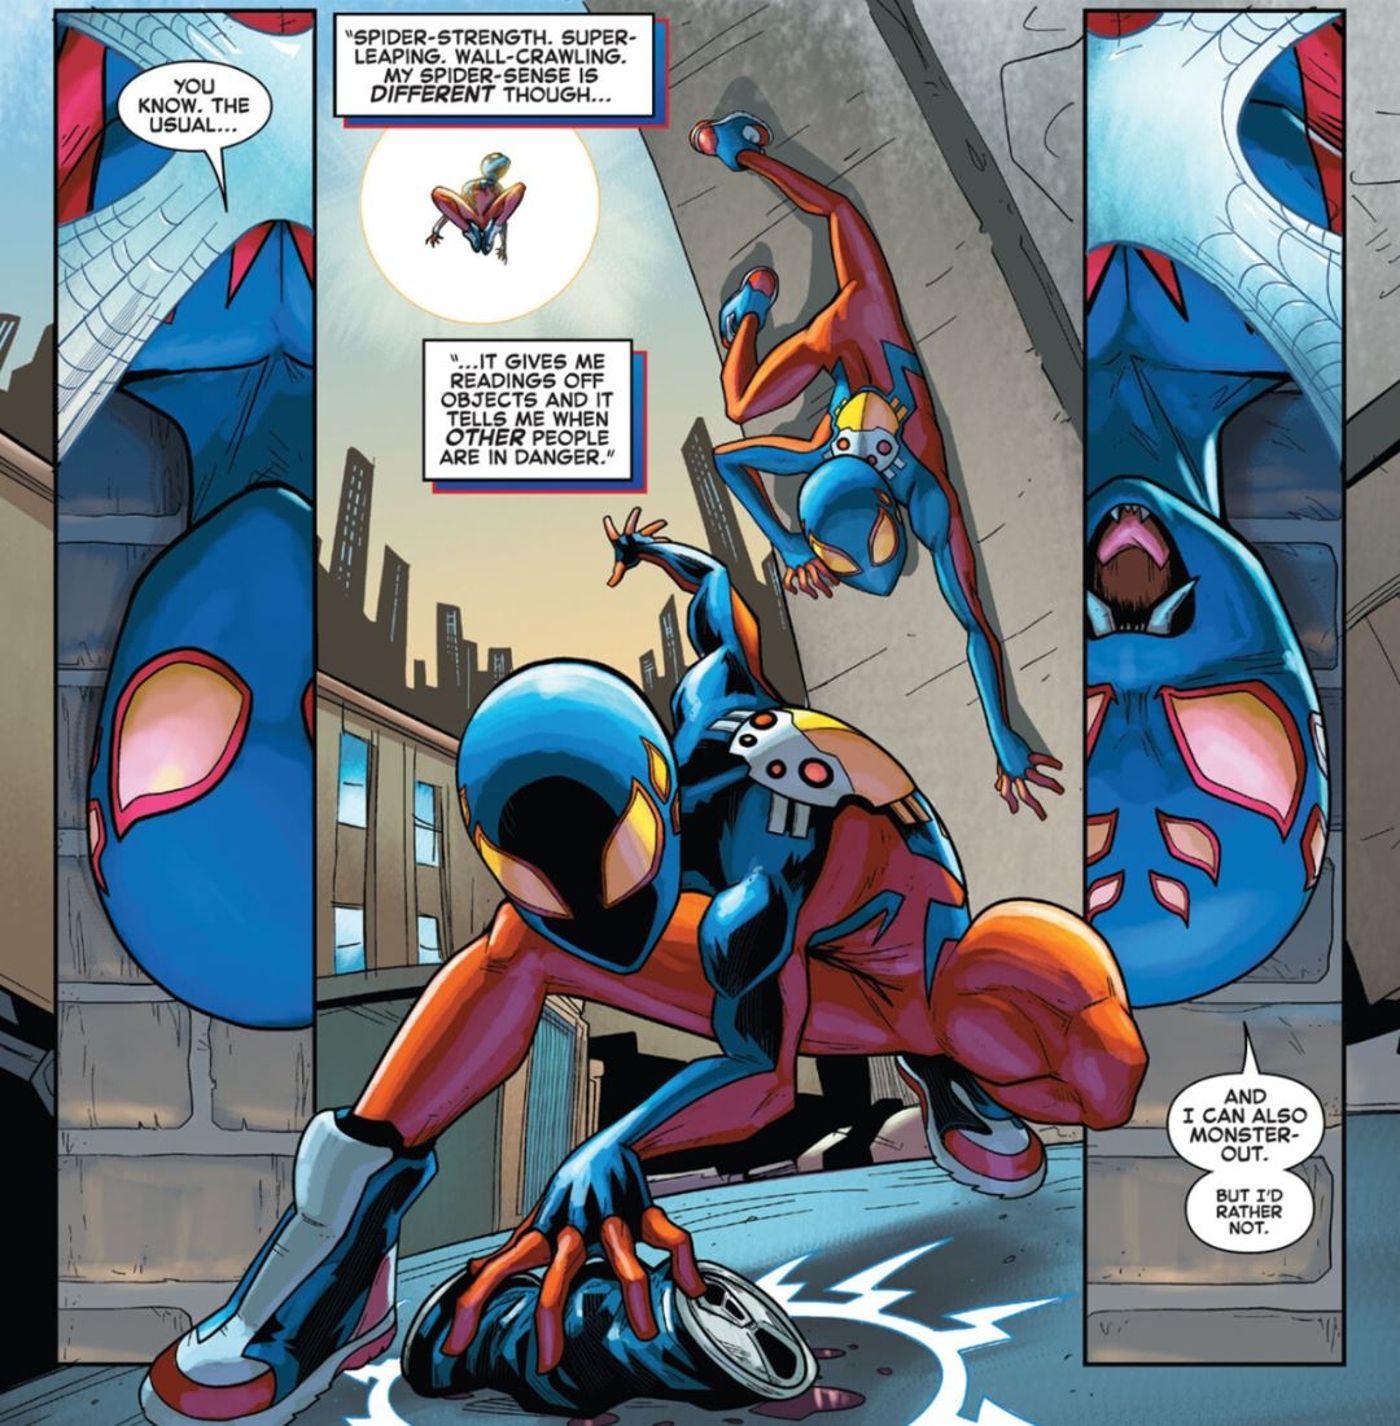 Spider-Boy on Spider Powers Marvel